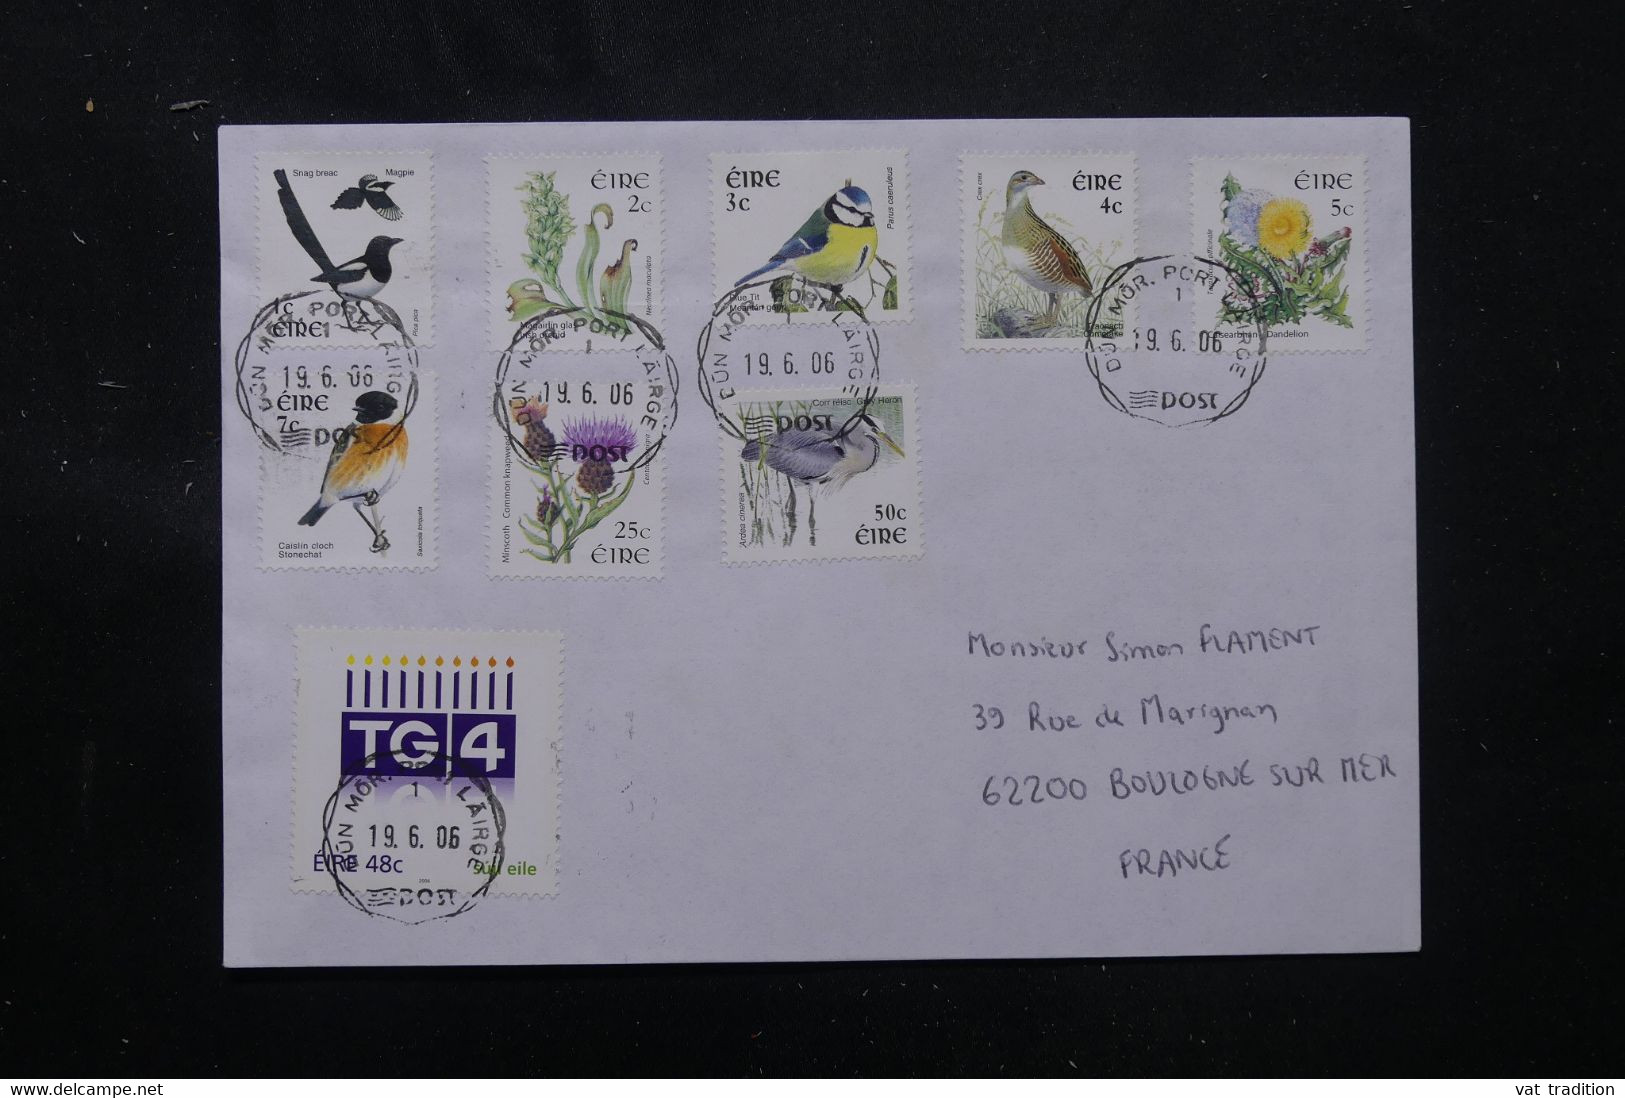 IRLANDE - Enveloppe Pour La France En 2006, Affranchissement Oiseaux - L 76292 - Lettres & Documents